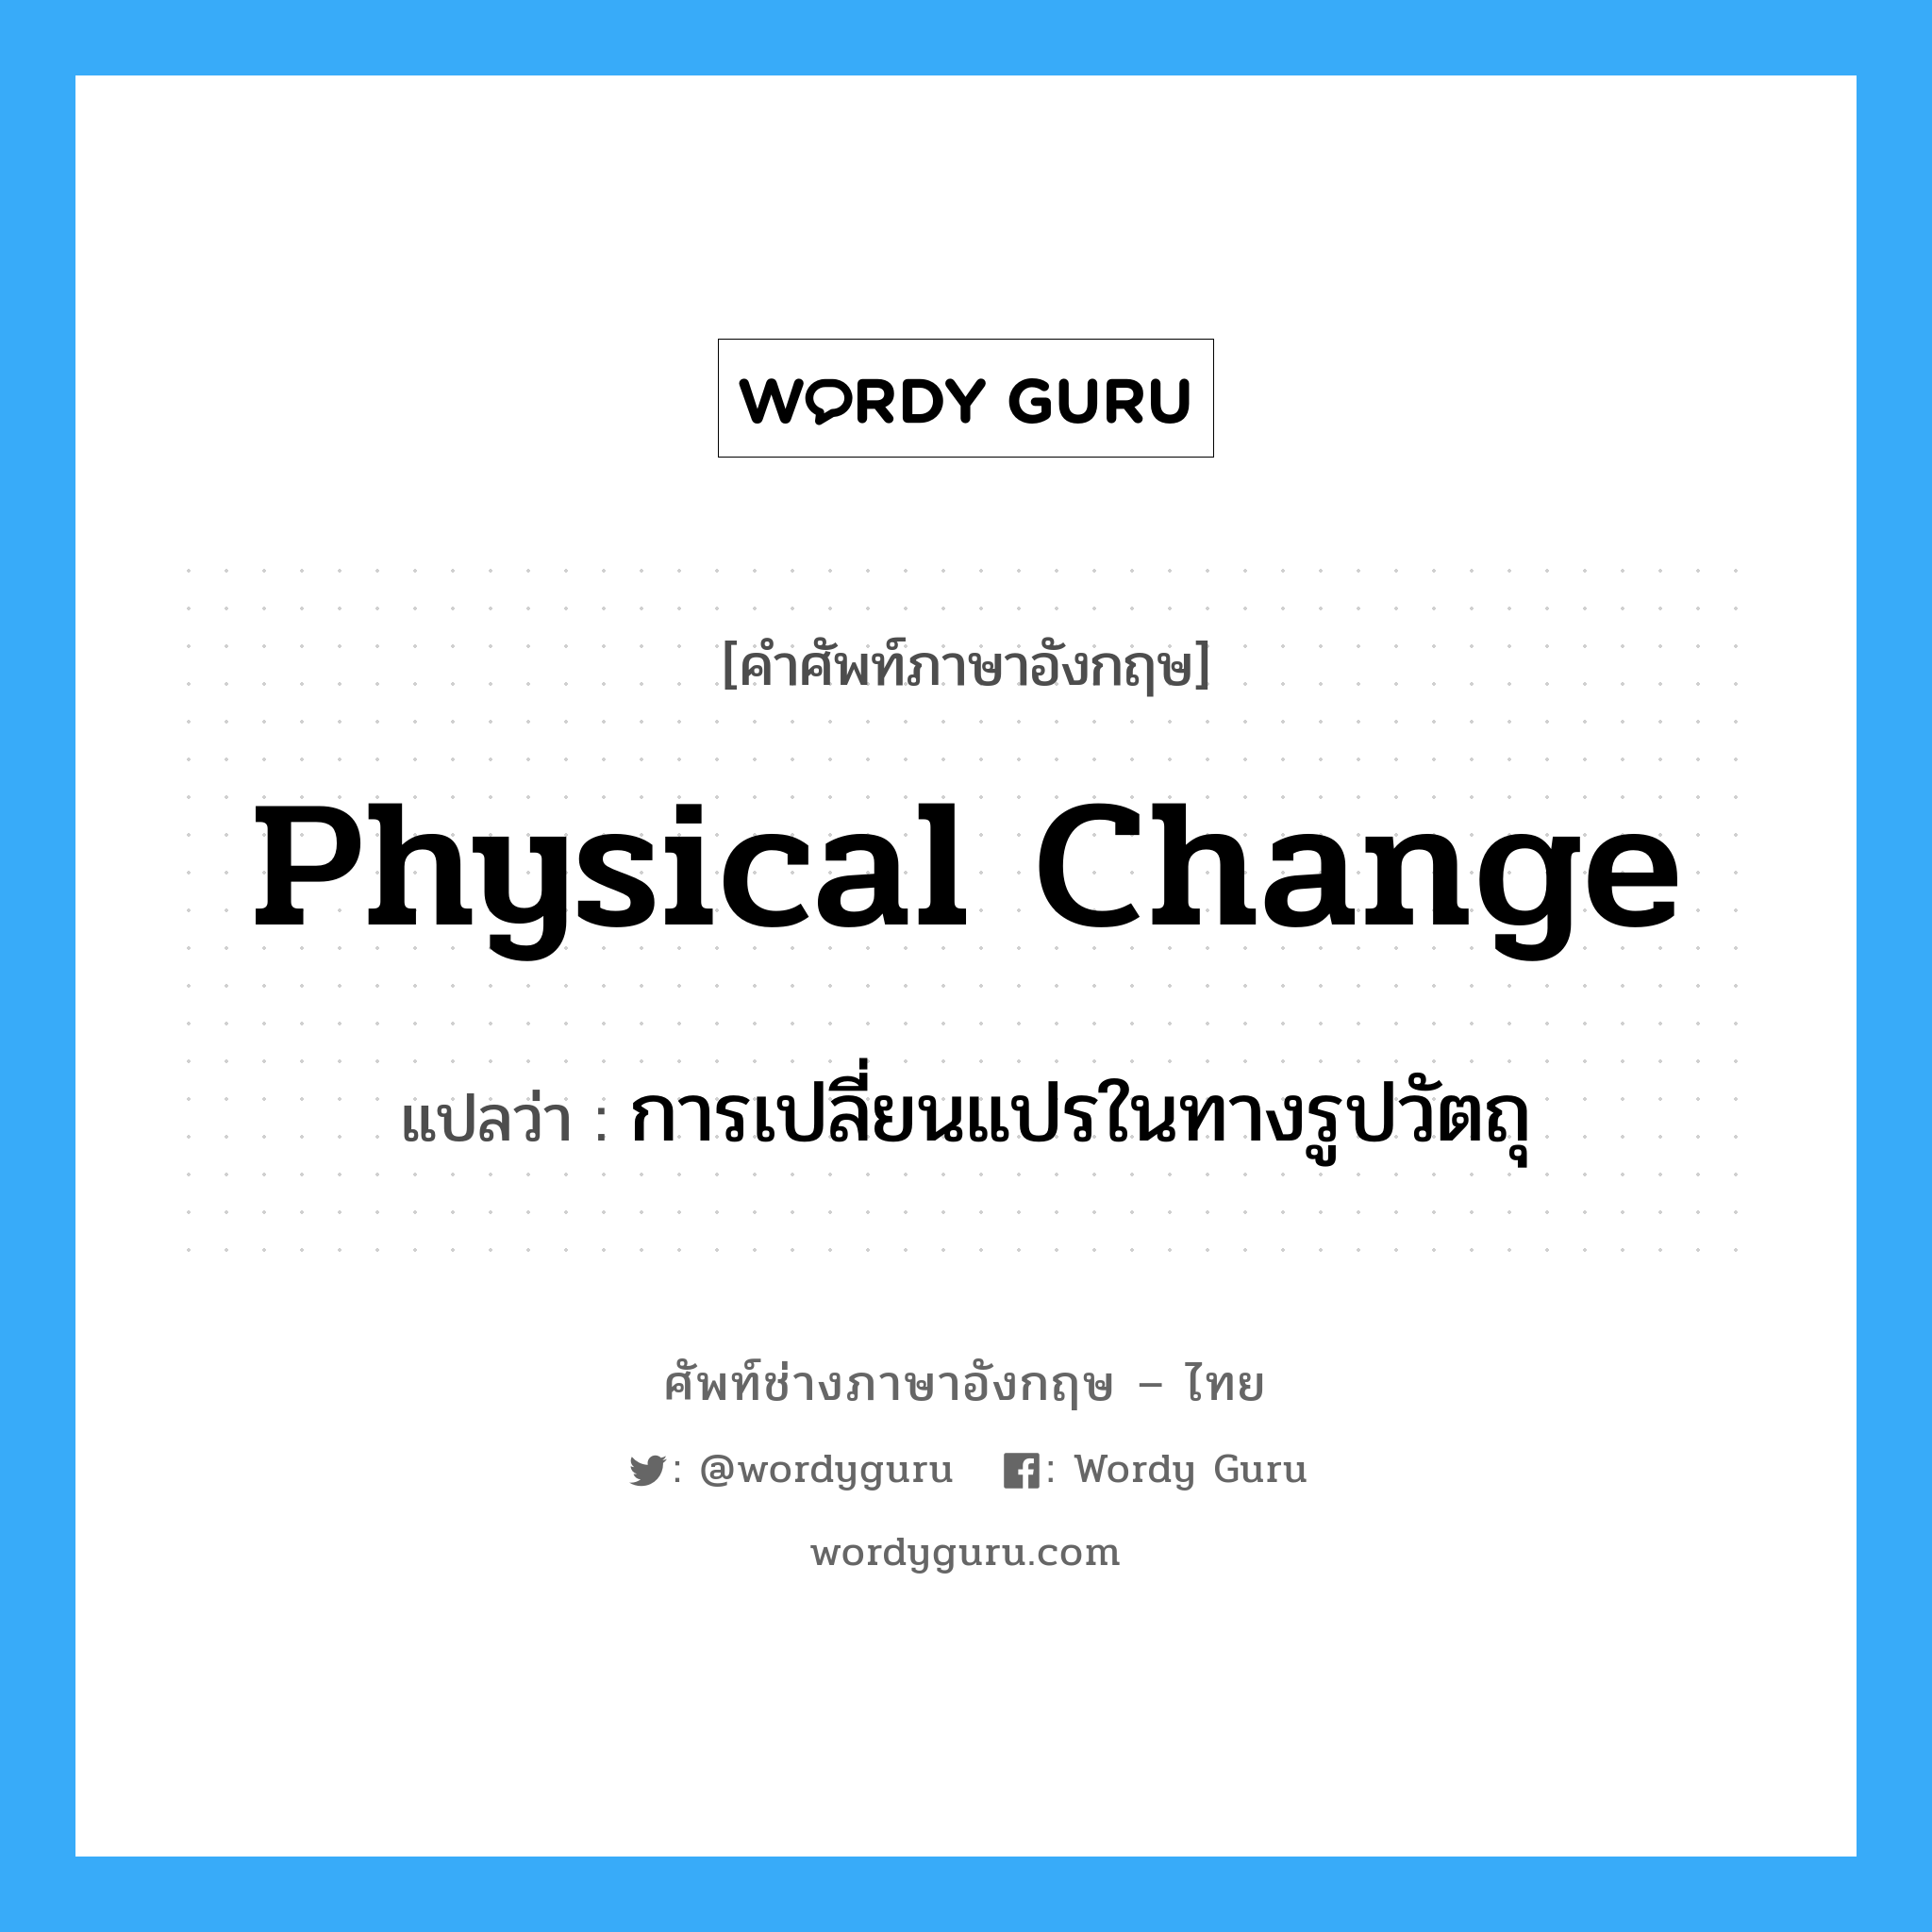 การเปลี่ยนแปรในทางรูปวัตถุ ภาษาอังกฤษ?, คำศัพท์ช่างภาษาอังกฤษ - ไทย การเปลี่ยนแปรในทางรูปวัตถุ คำศัพท์ภาษาอังกฤษ การเปลี่ยนแปรในทางรูปวัตถุ แปลว่า physical change